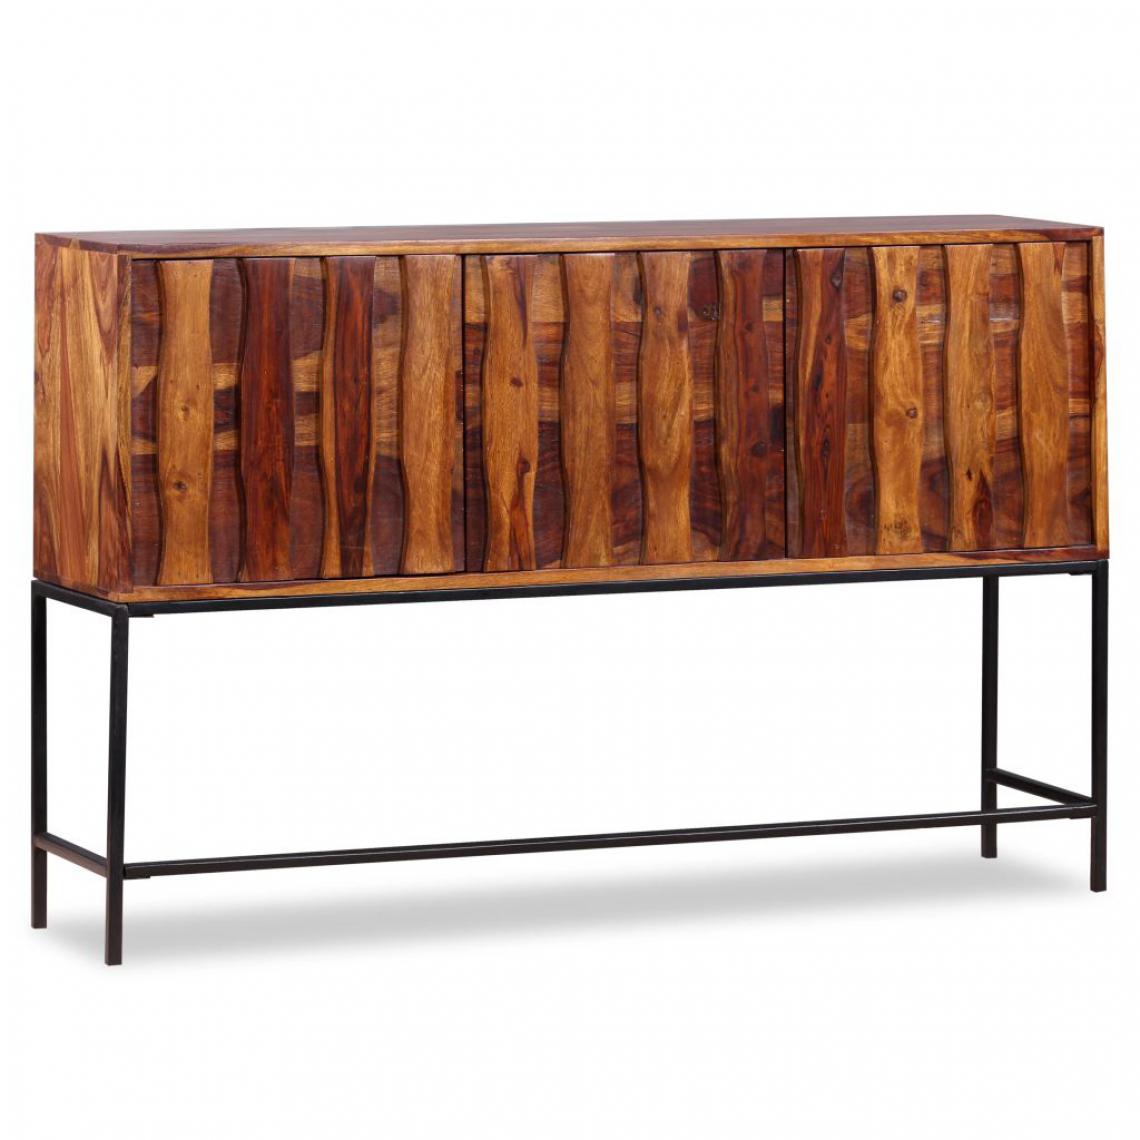 Helloshop26 - Buffet bahut armoire console meuble de rangement bois massif de sesham 120 cm 4402150 - Consoles